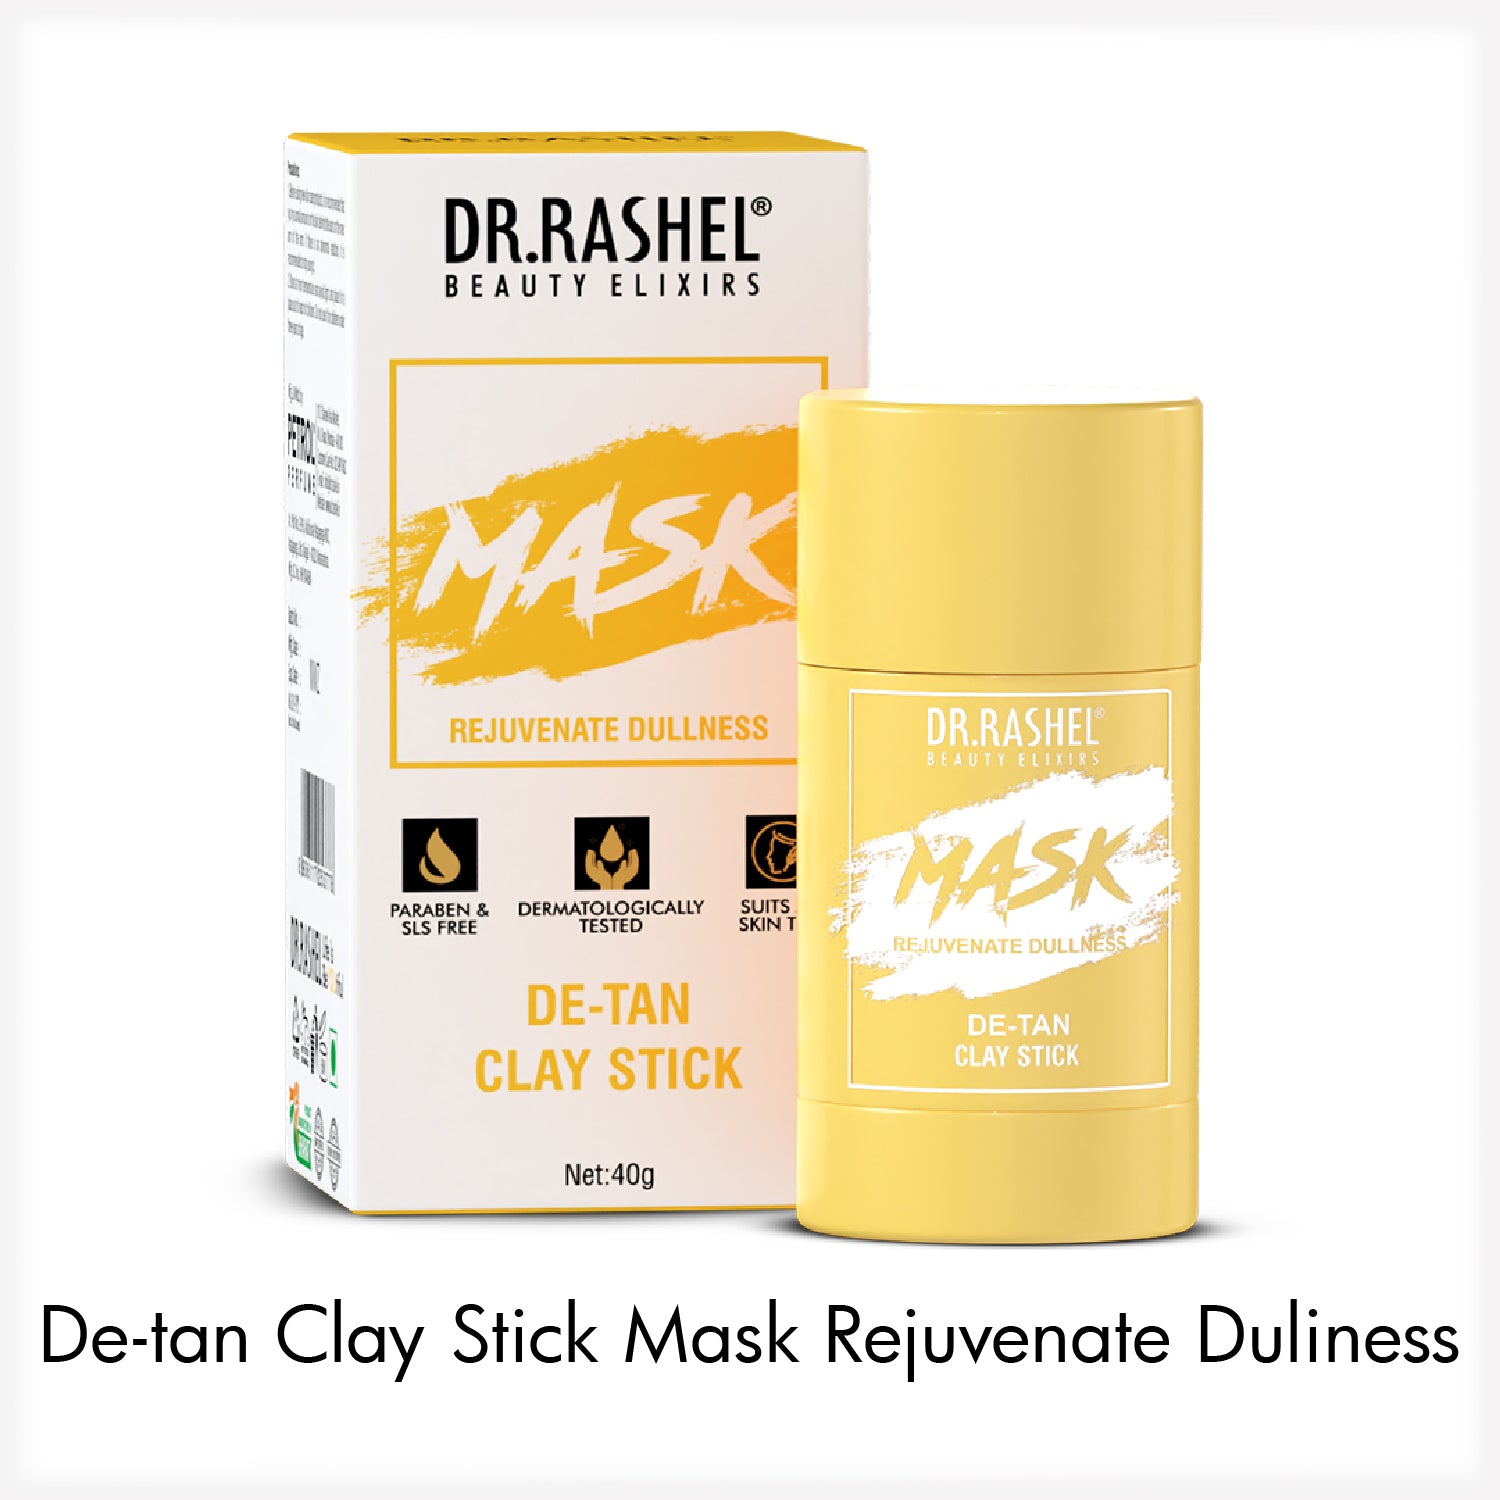 De-tan Clay Stick Mask